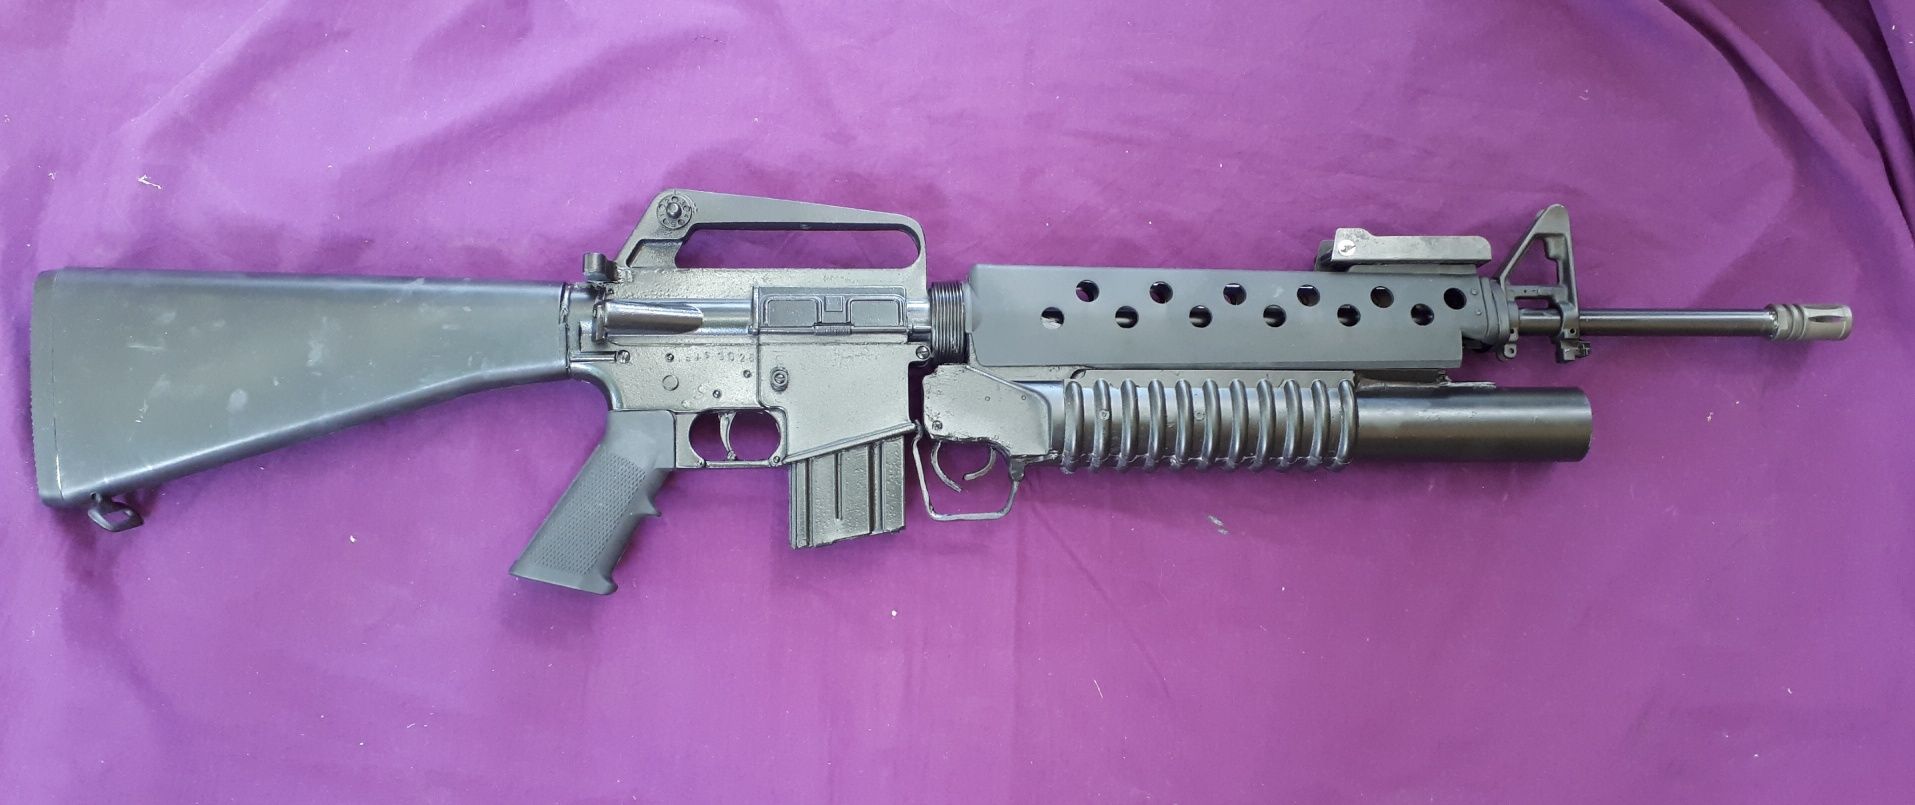 Replica M16 with M203 2